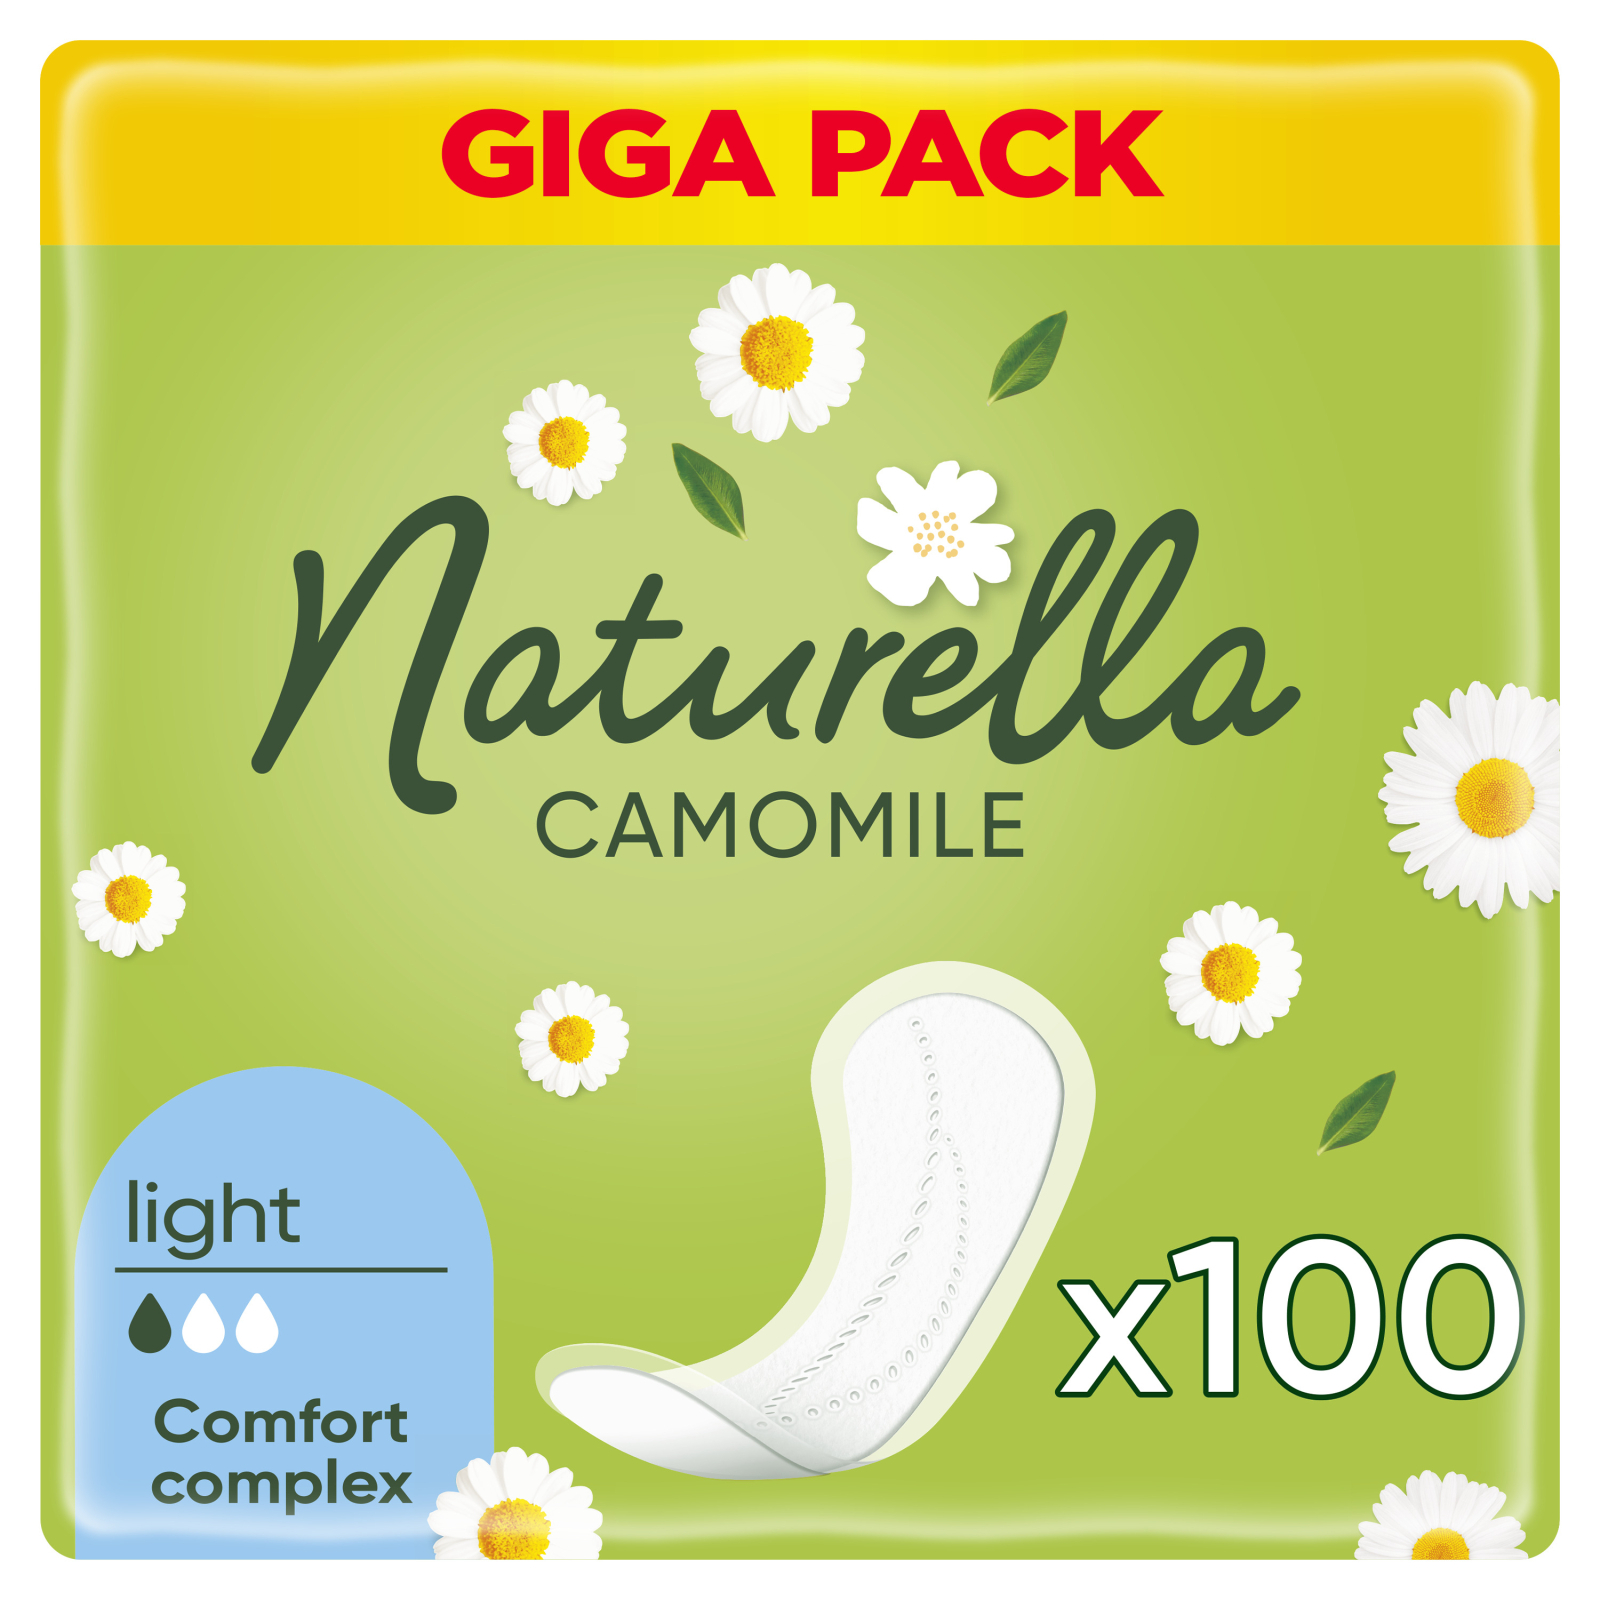 Ежедневные прокладки Naturella Camomile Light 100 шт. (8001090603807)